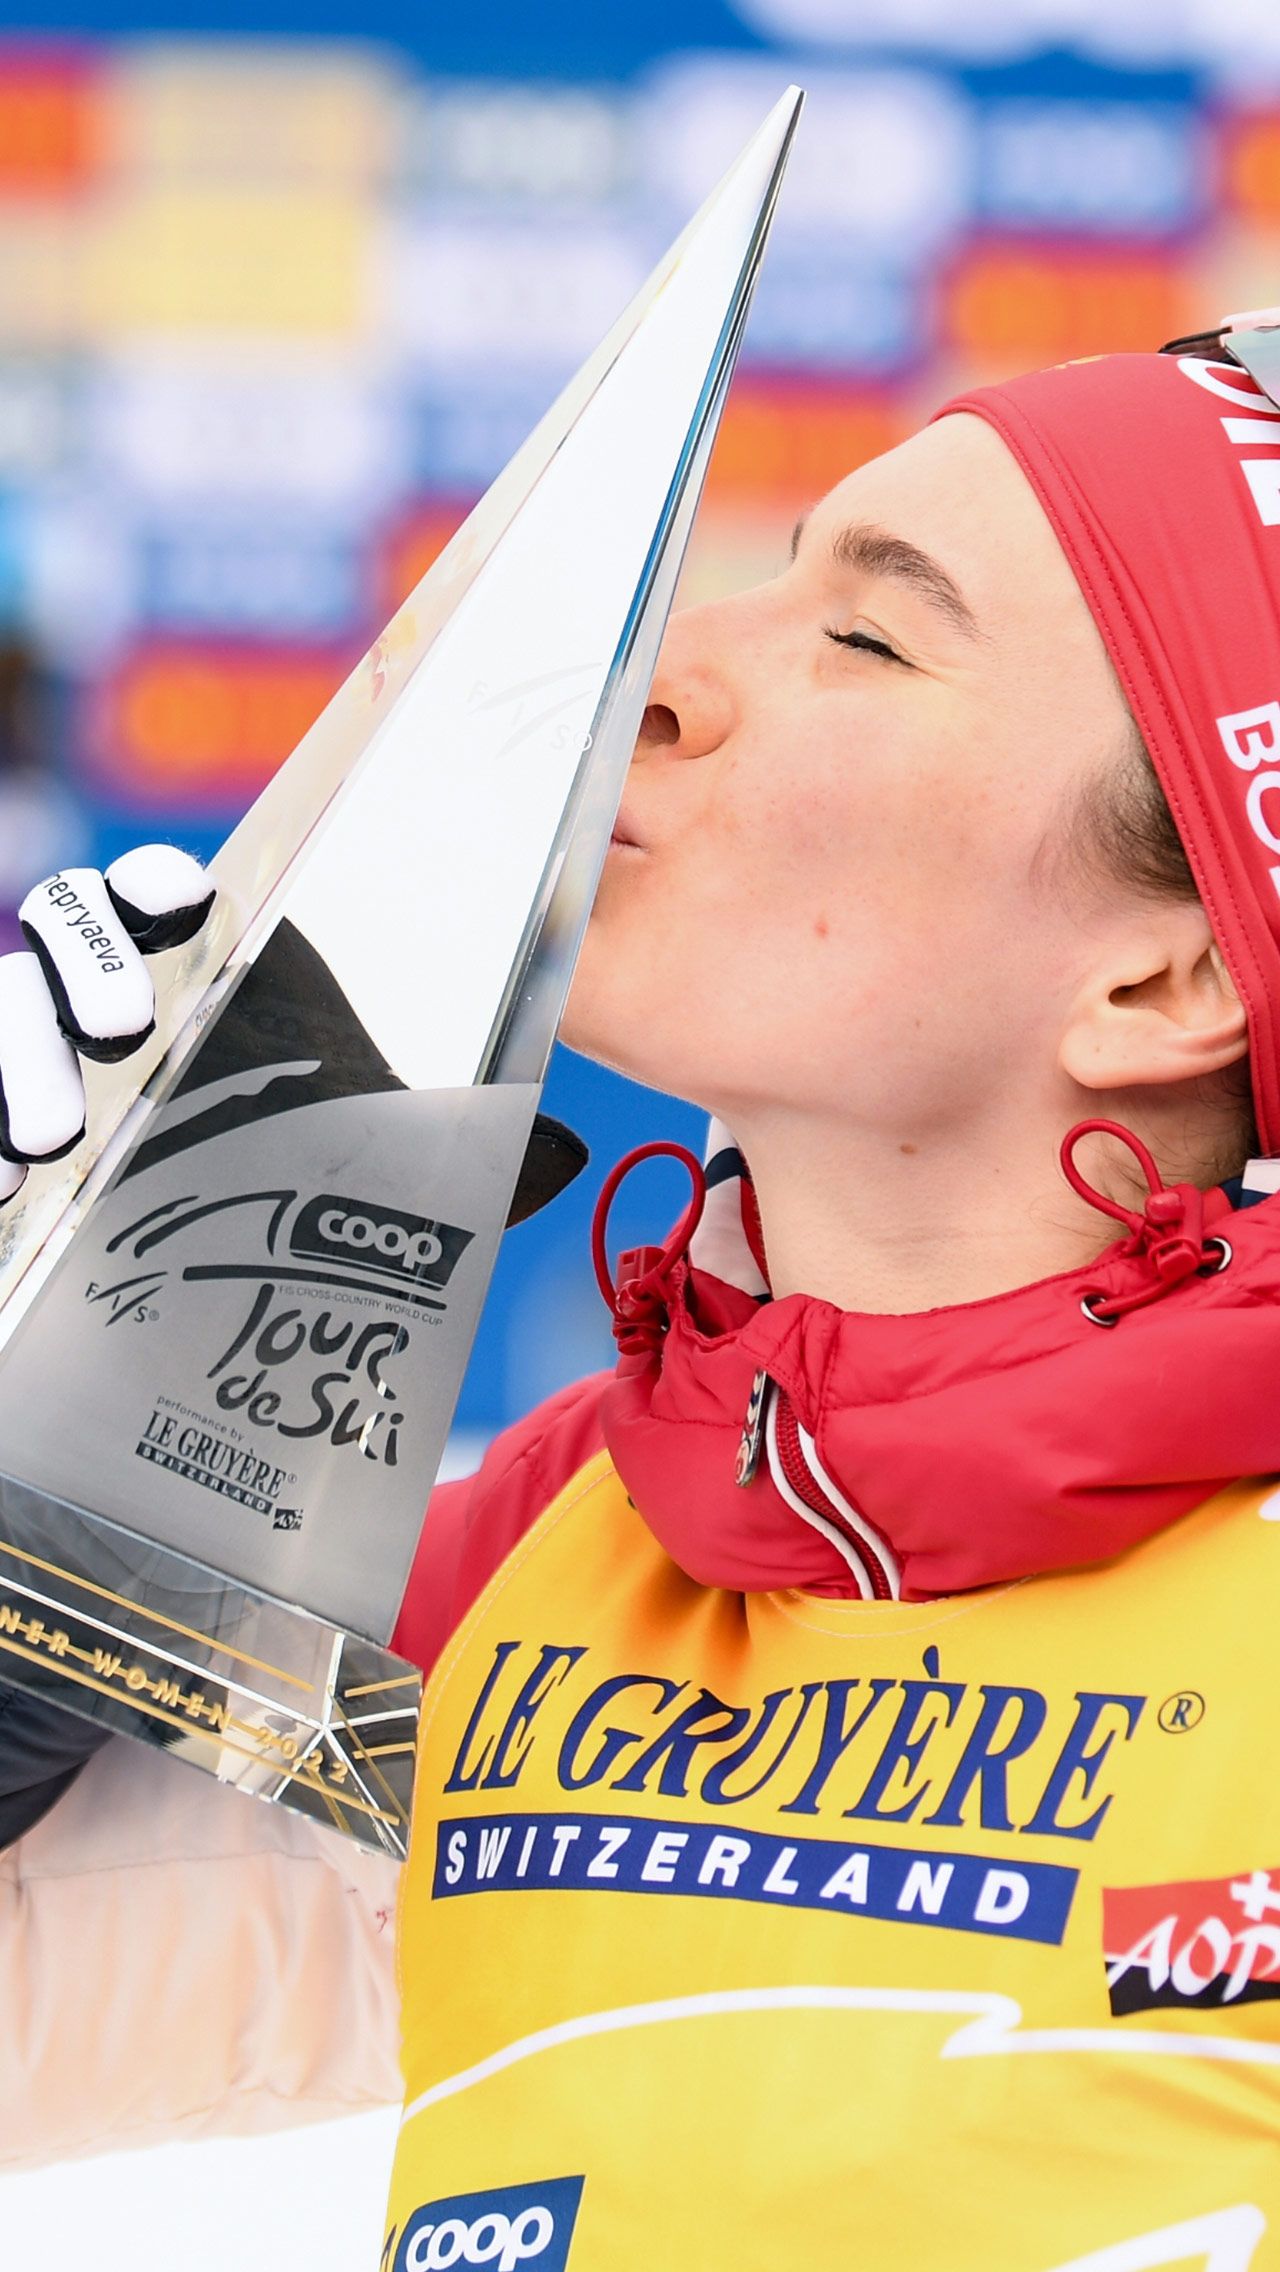 Также лыжница взяла «Большой хрустальный глобус» за победу в Кубке мира и стала первой россиянкой, выигравшей «Тур де Ски». За год у Непряевой скопилось много достижений, поэтому неудивительно, что не все были согласны с результатами голосования.